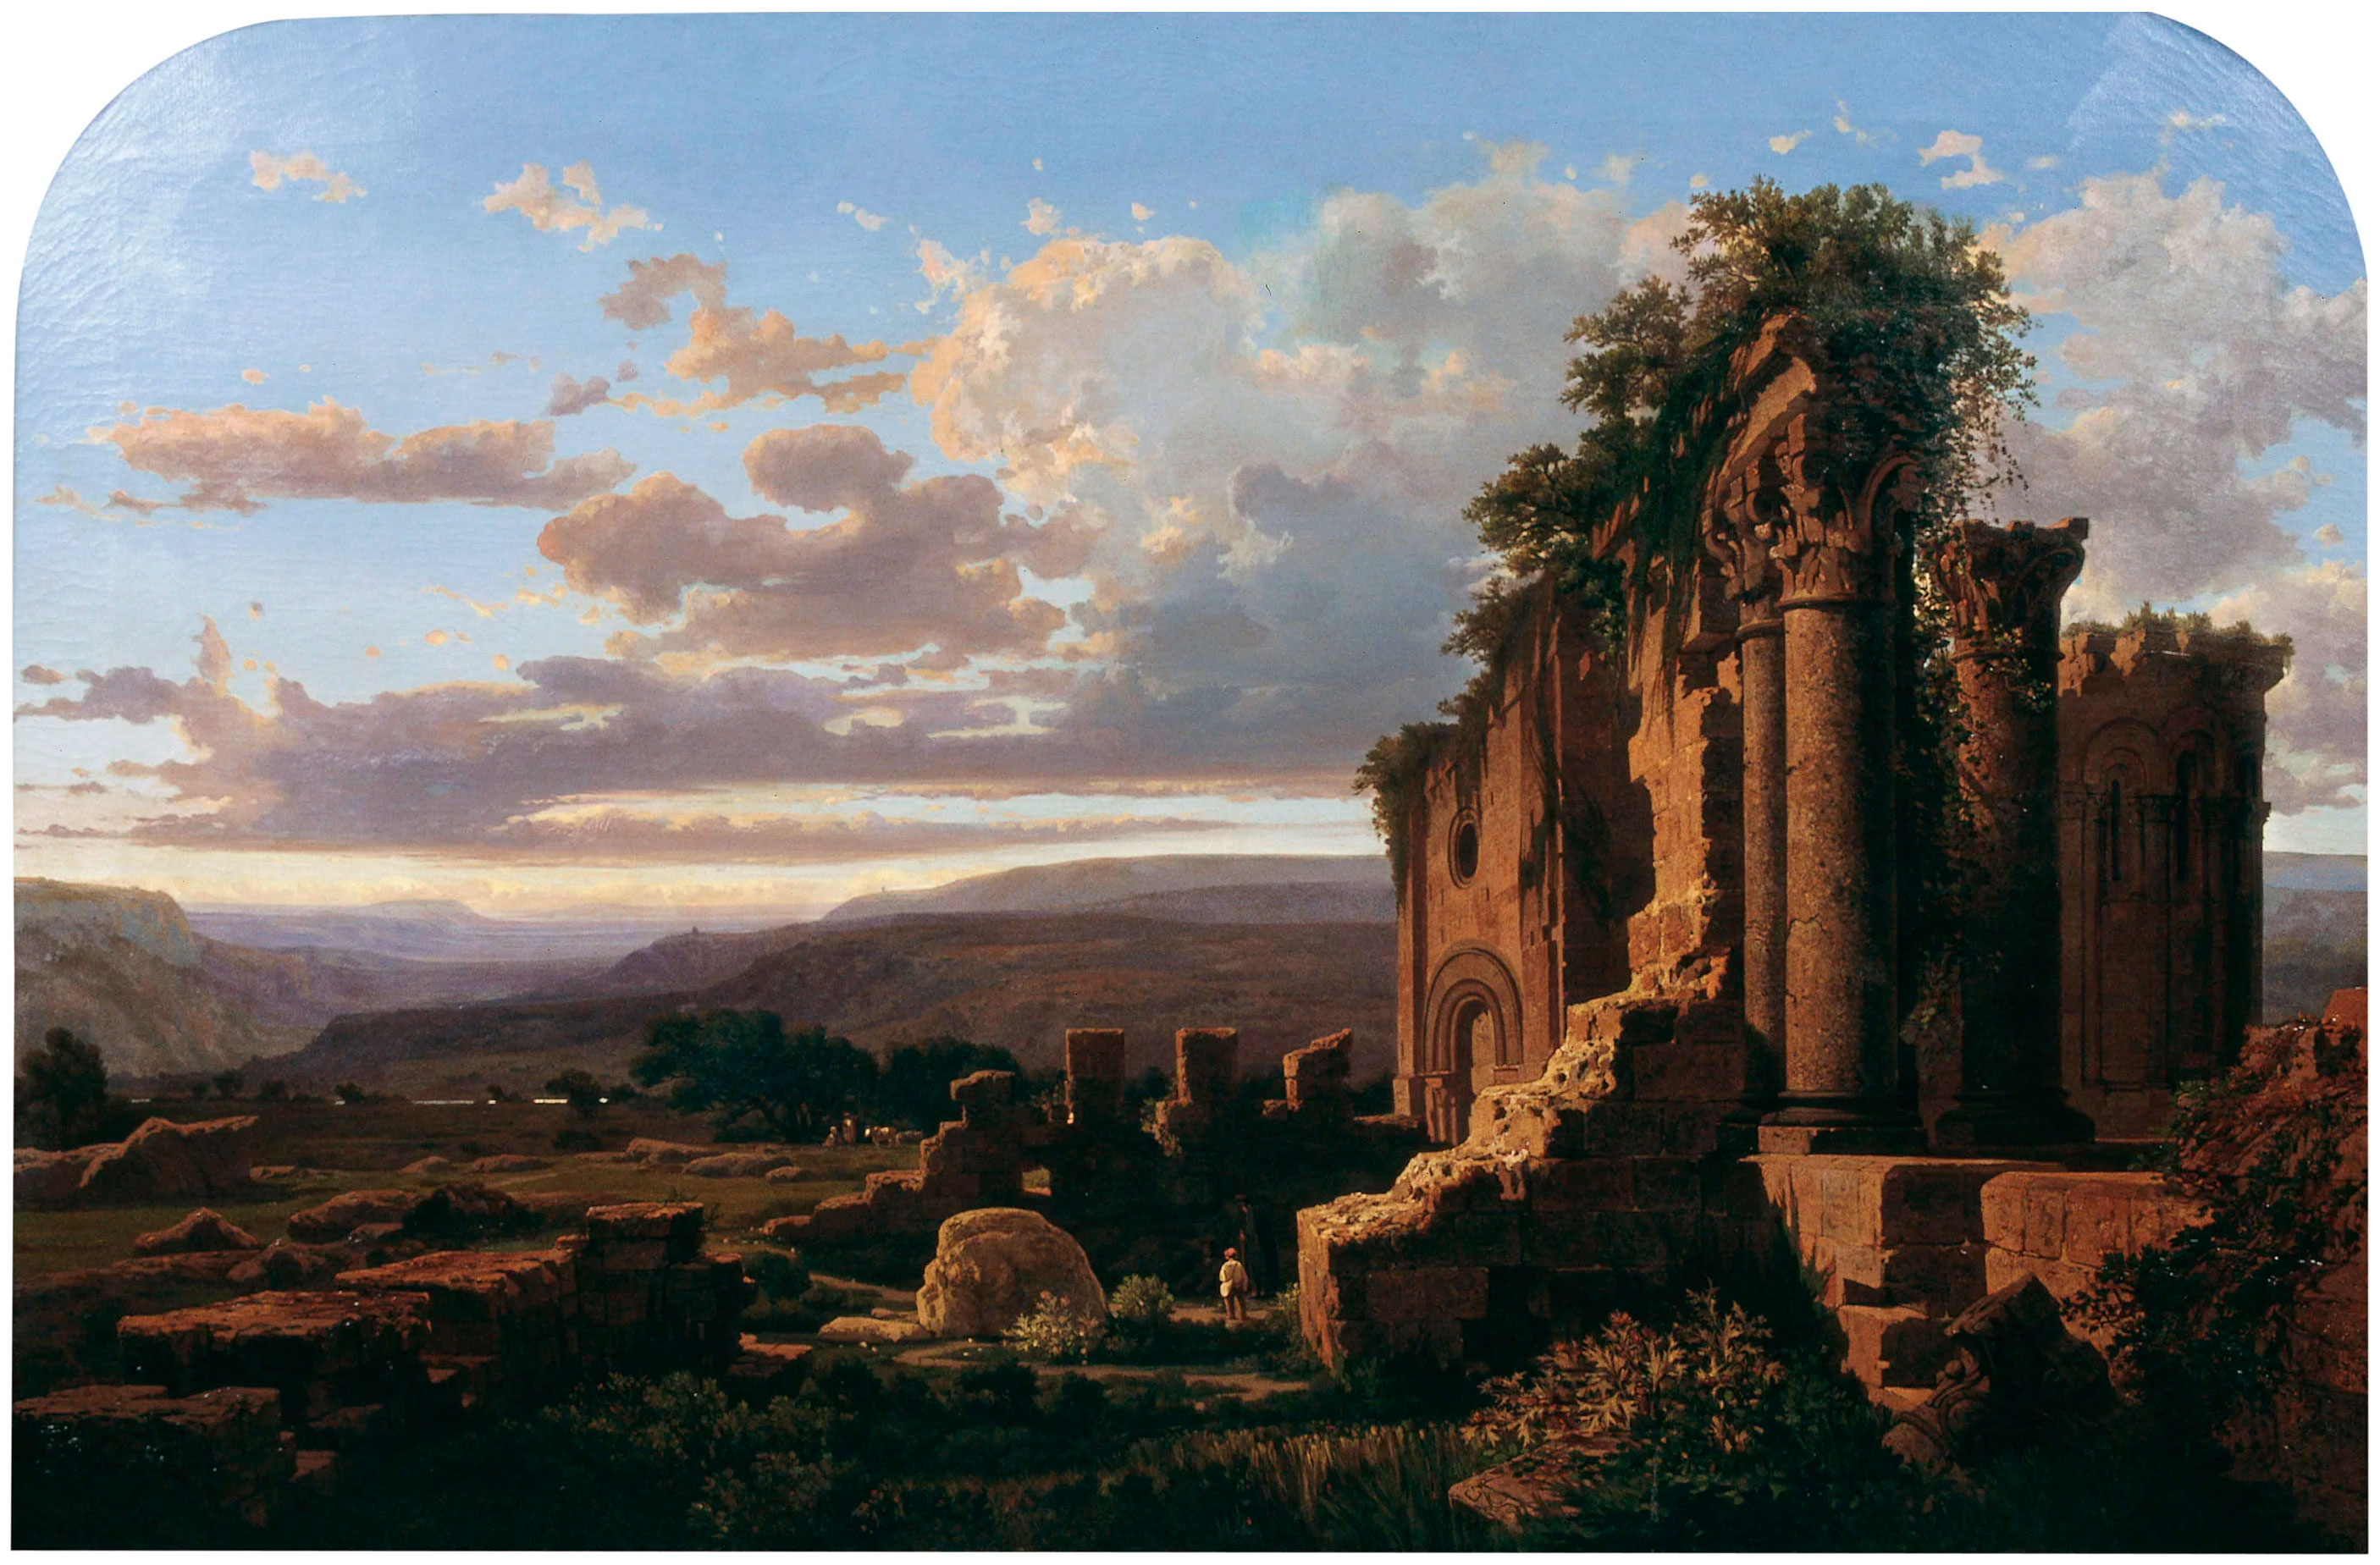 Ruïnes (1865), de Lluís Rigalt i Farriols, assenyalada com la peça més representativa
del romanticisme català